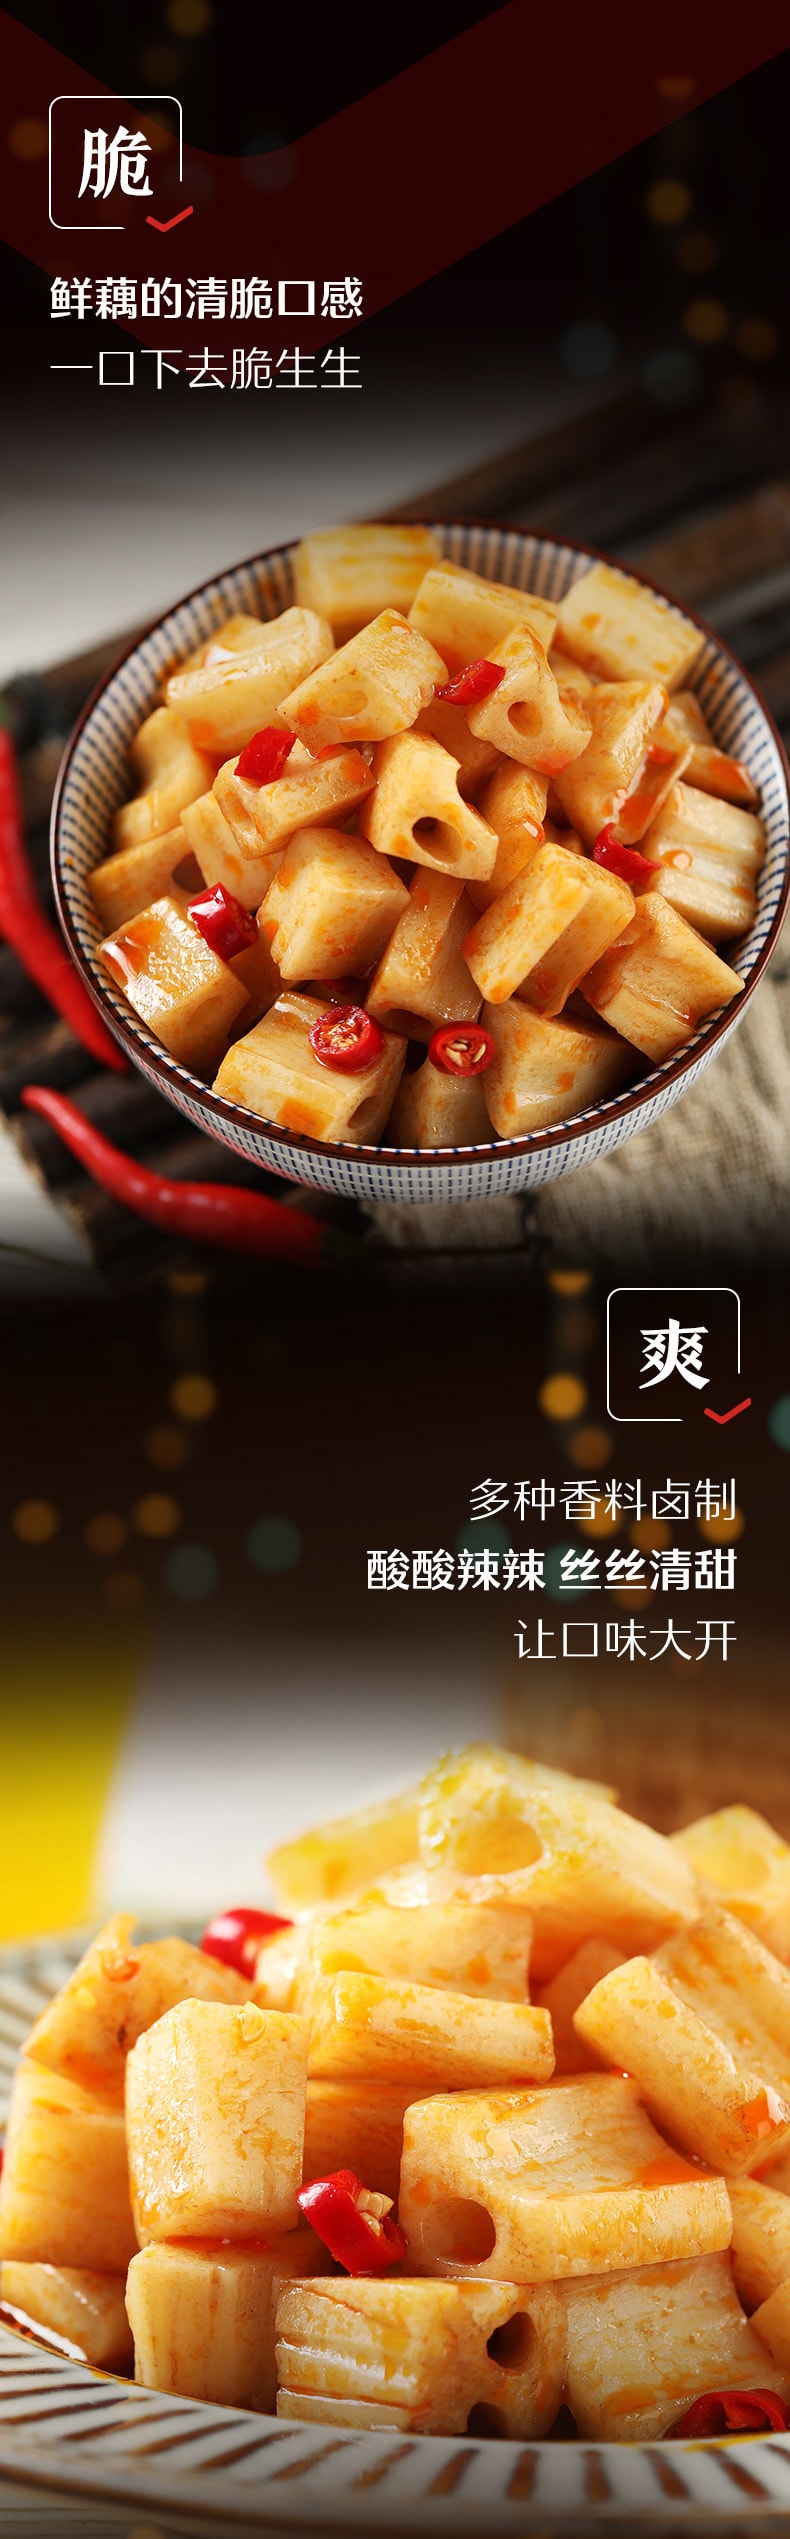 中國直郵]良品鋪子 BESTORE (新舊包裝隨機) 鹵藕 燒烤風味 168g 1袋